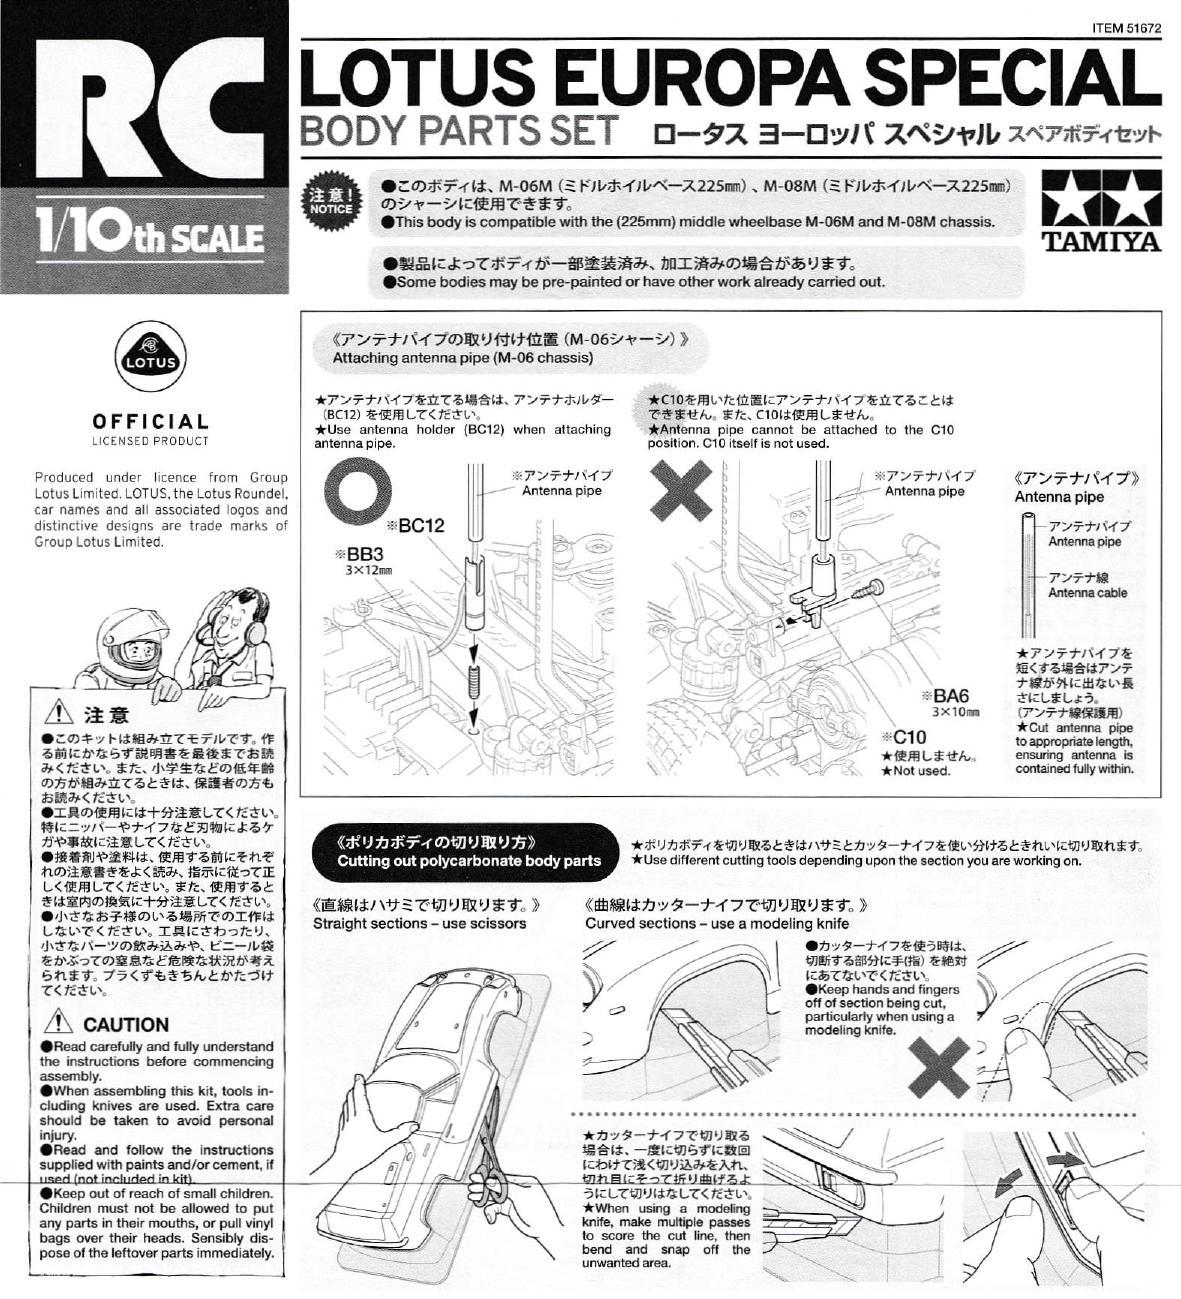 lotus-europa-sp-body-parts-set-manual.pdf